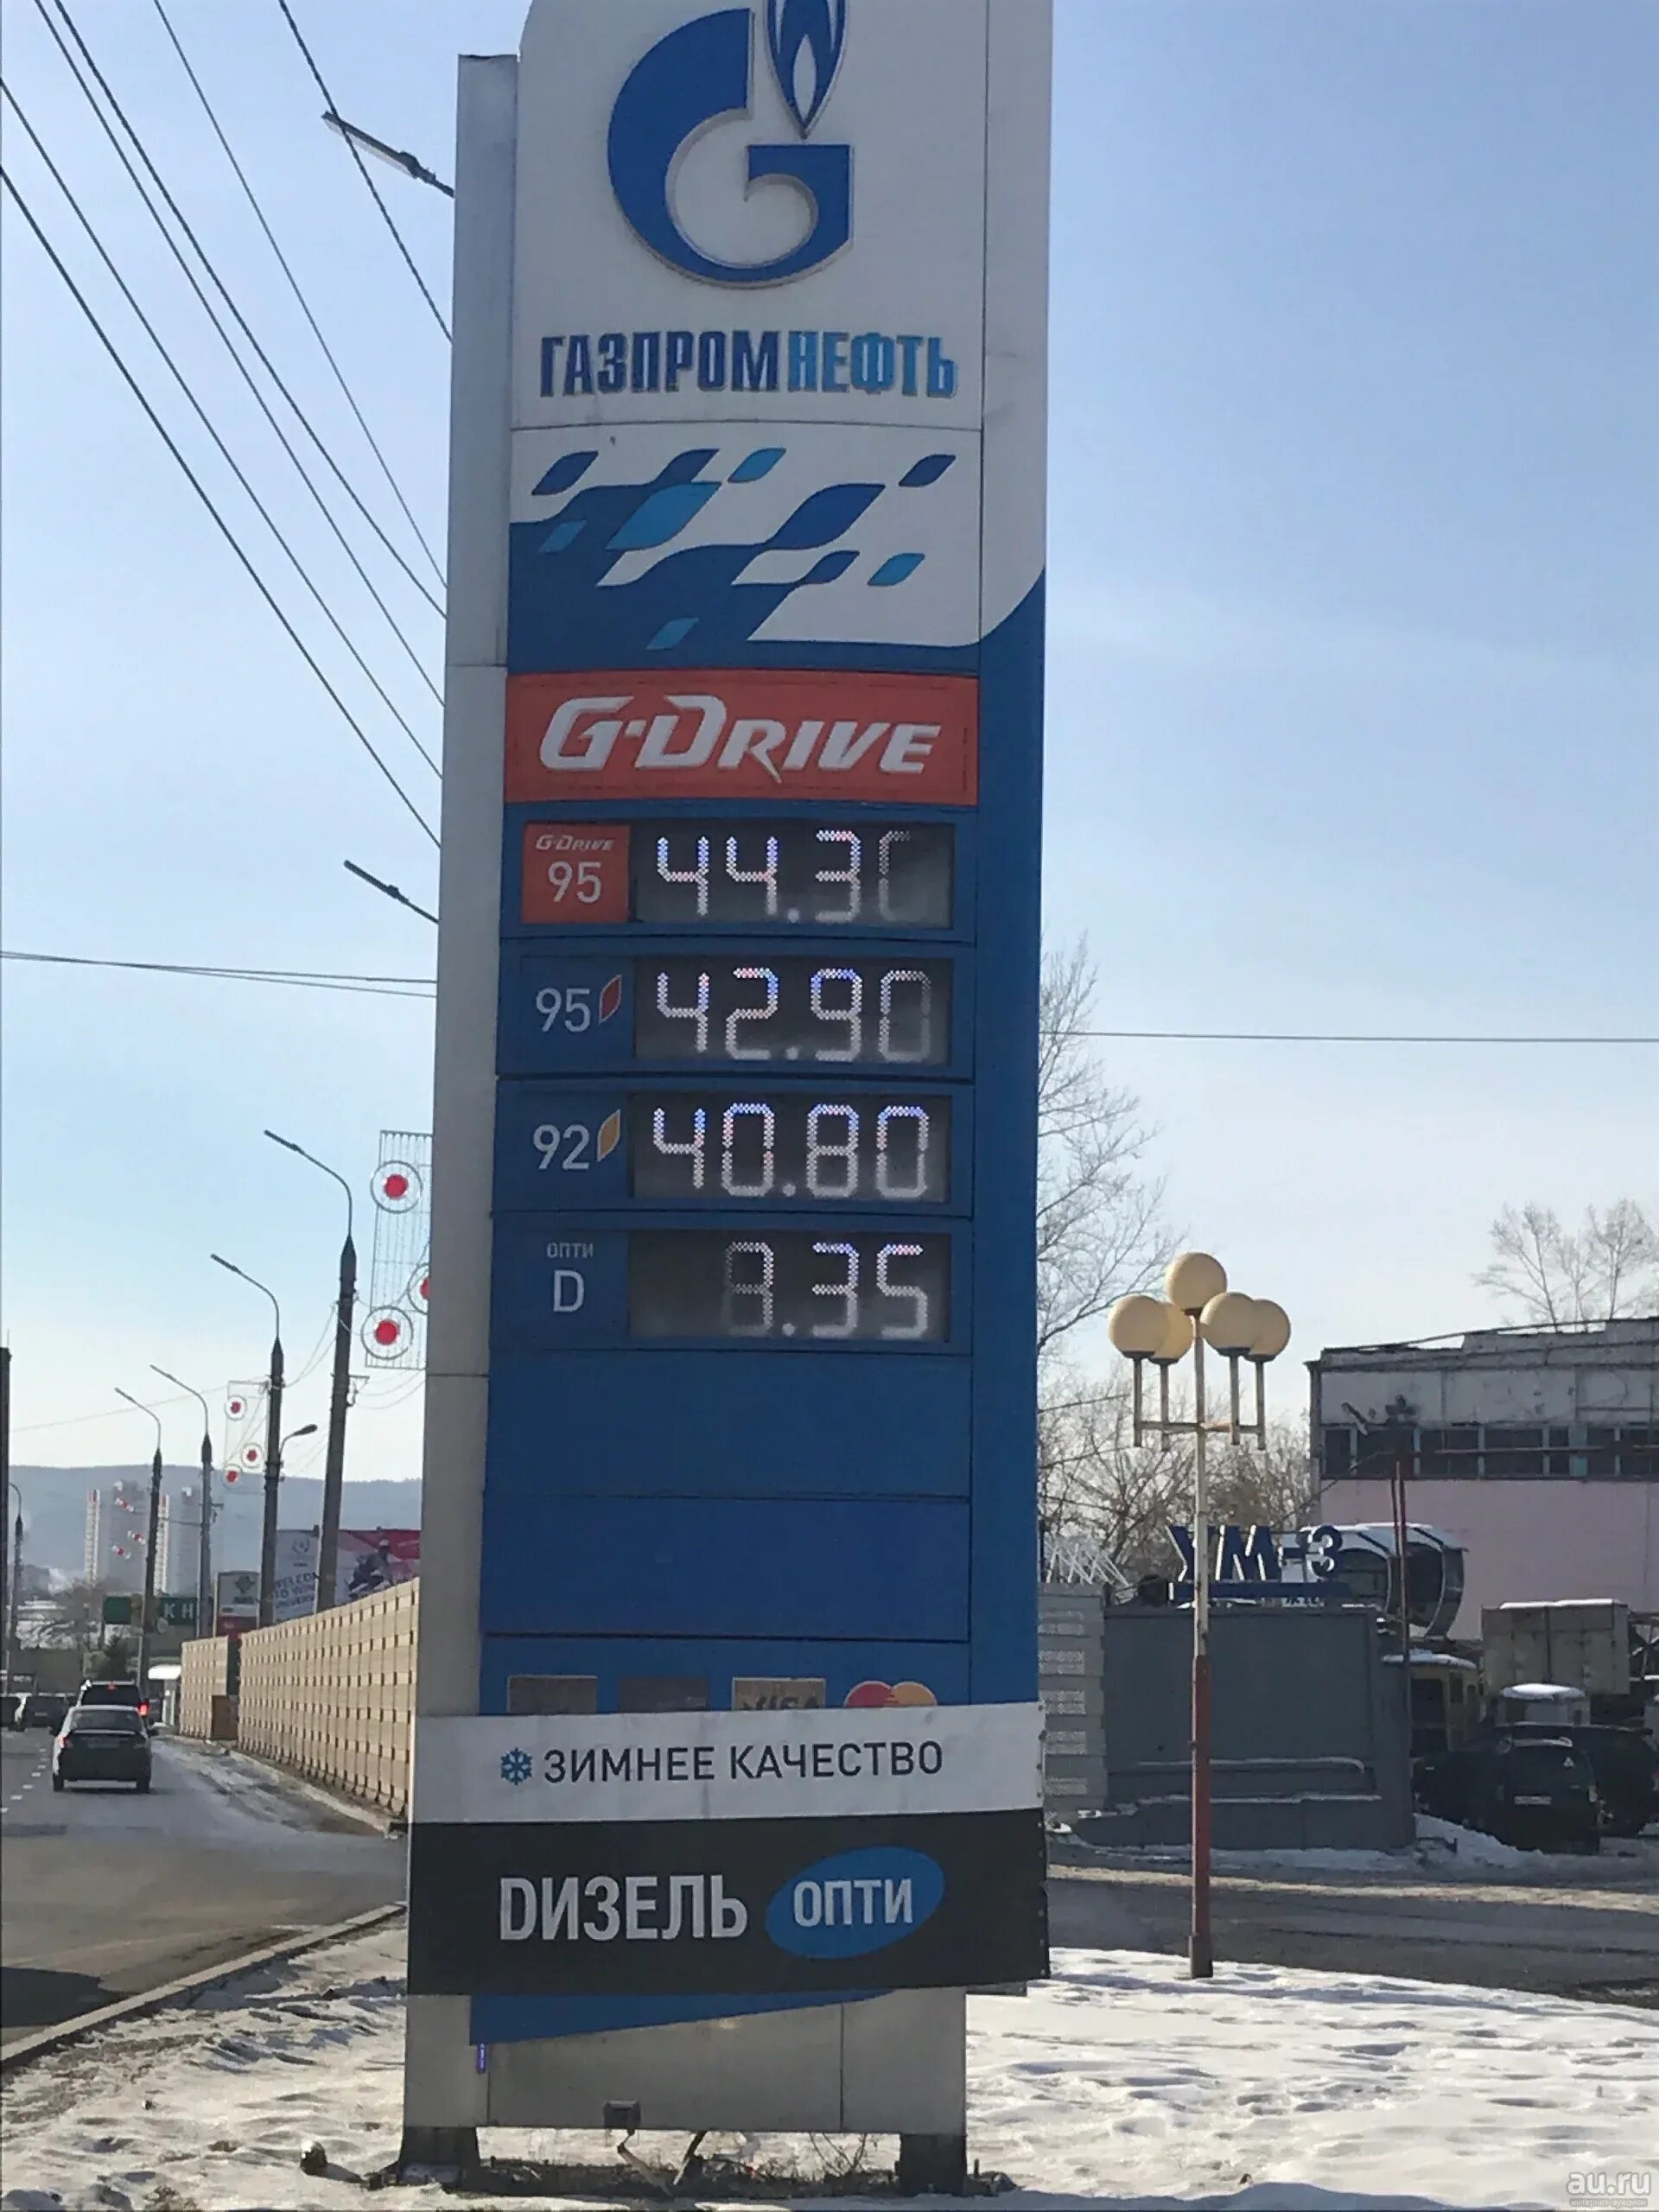 Цена за литр бензина 95